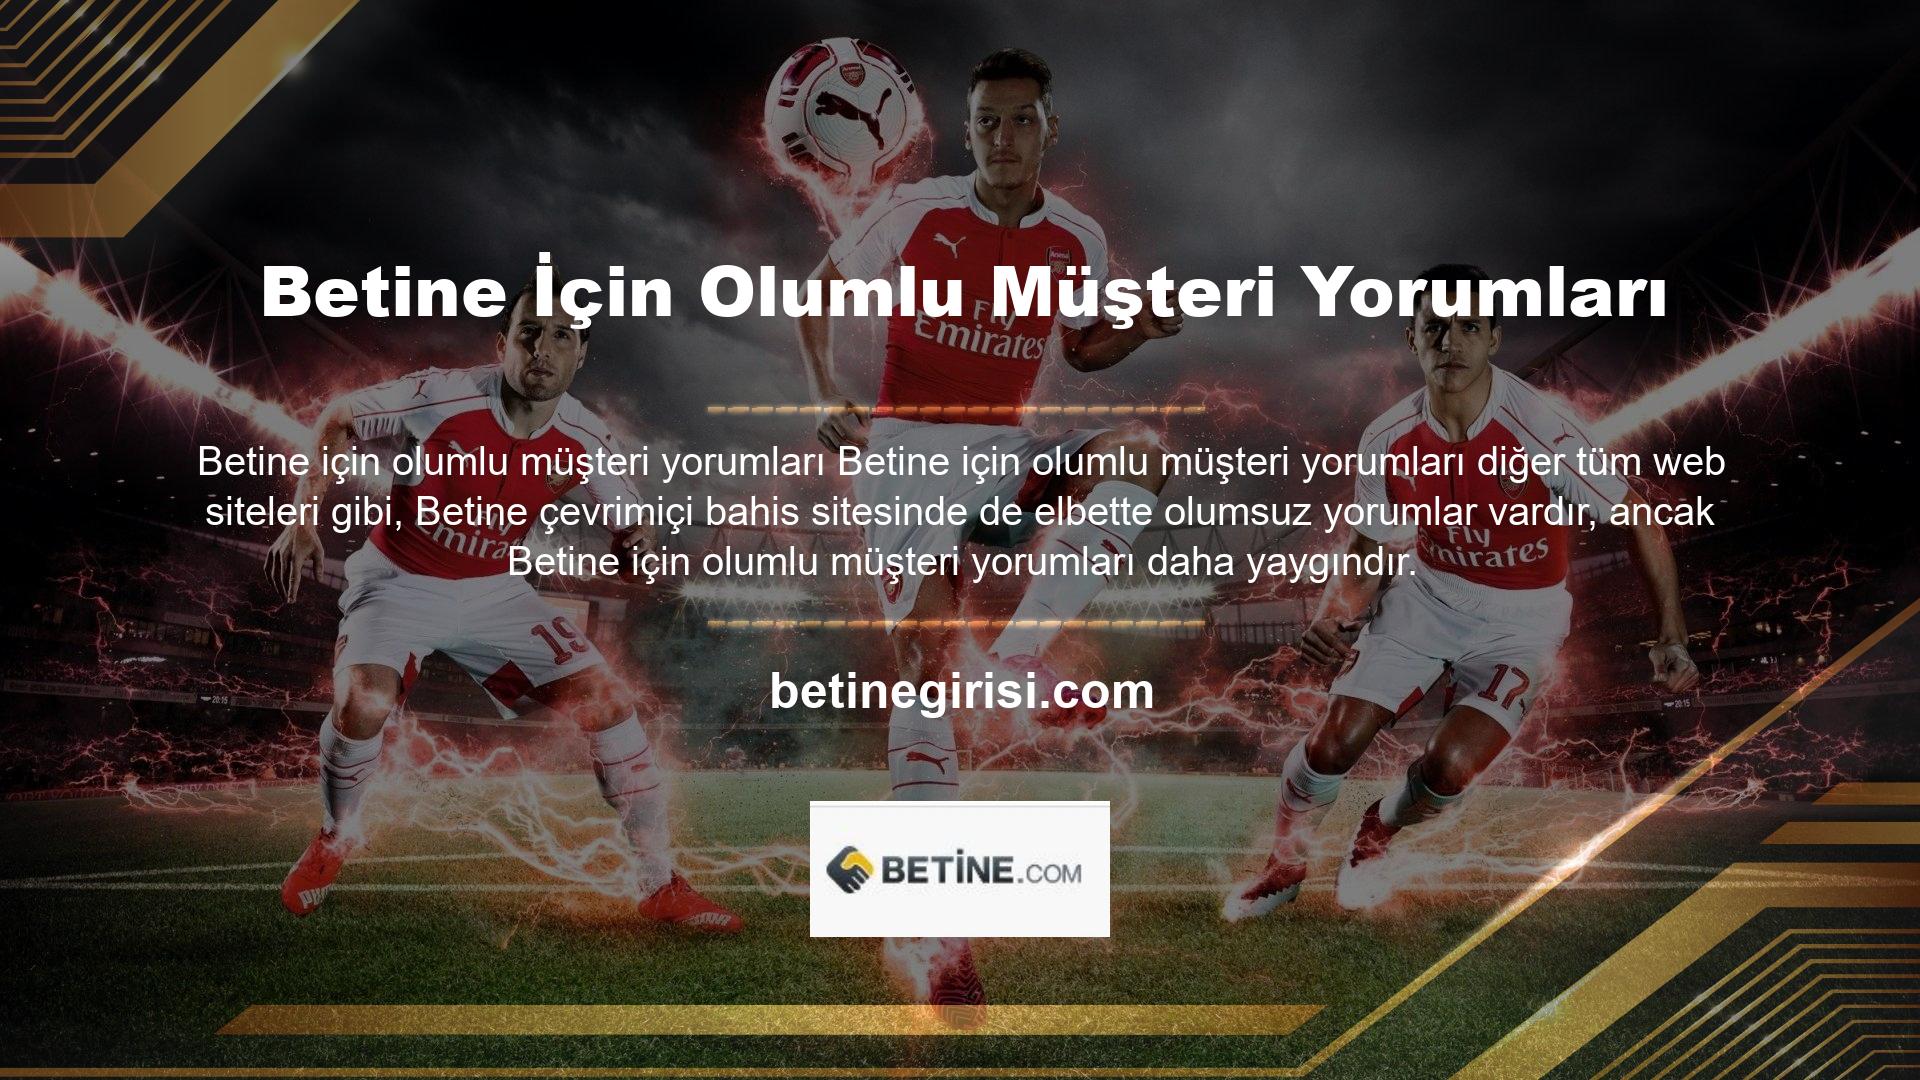 Betine, küresel Casino pazarında faaliyet göstermektedir ve bu deneyimi üyelerine aktarmaktadır